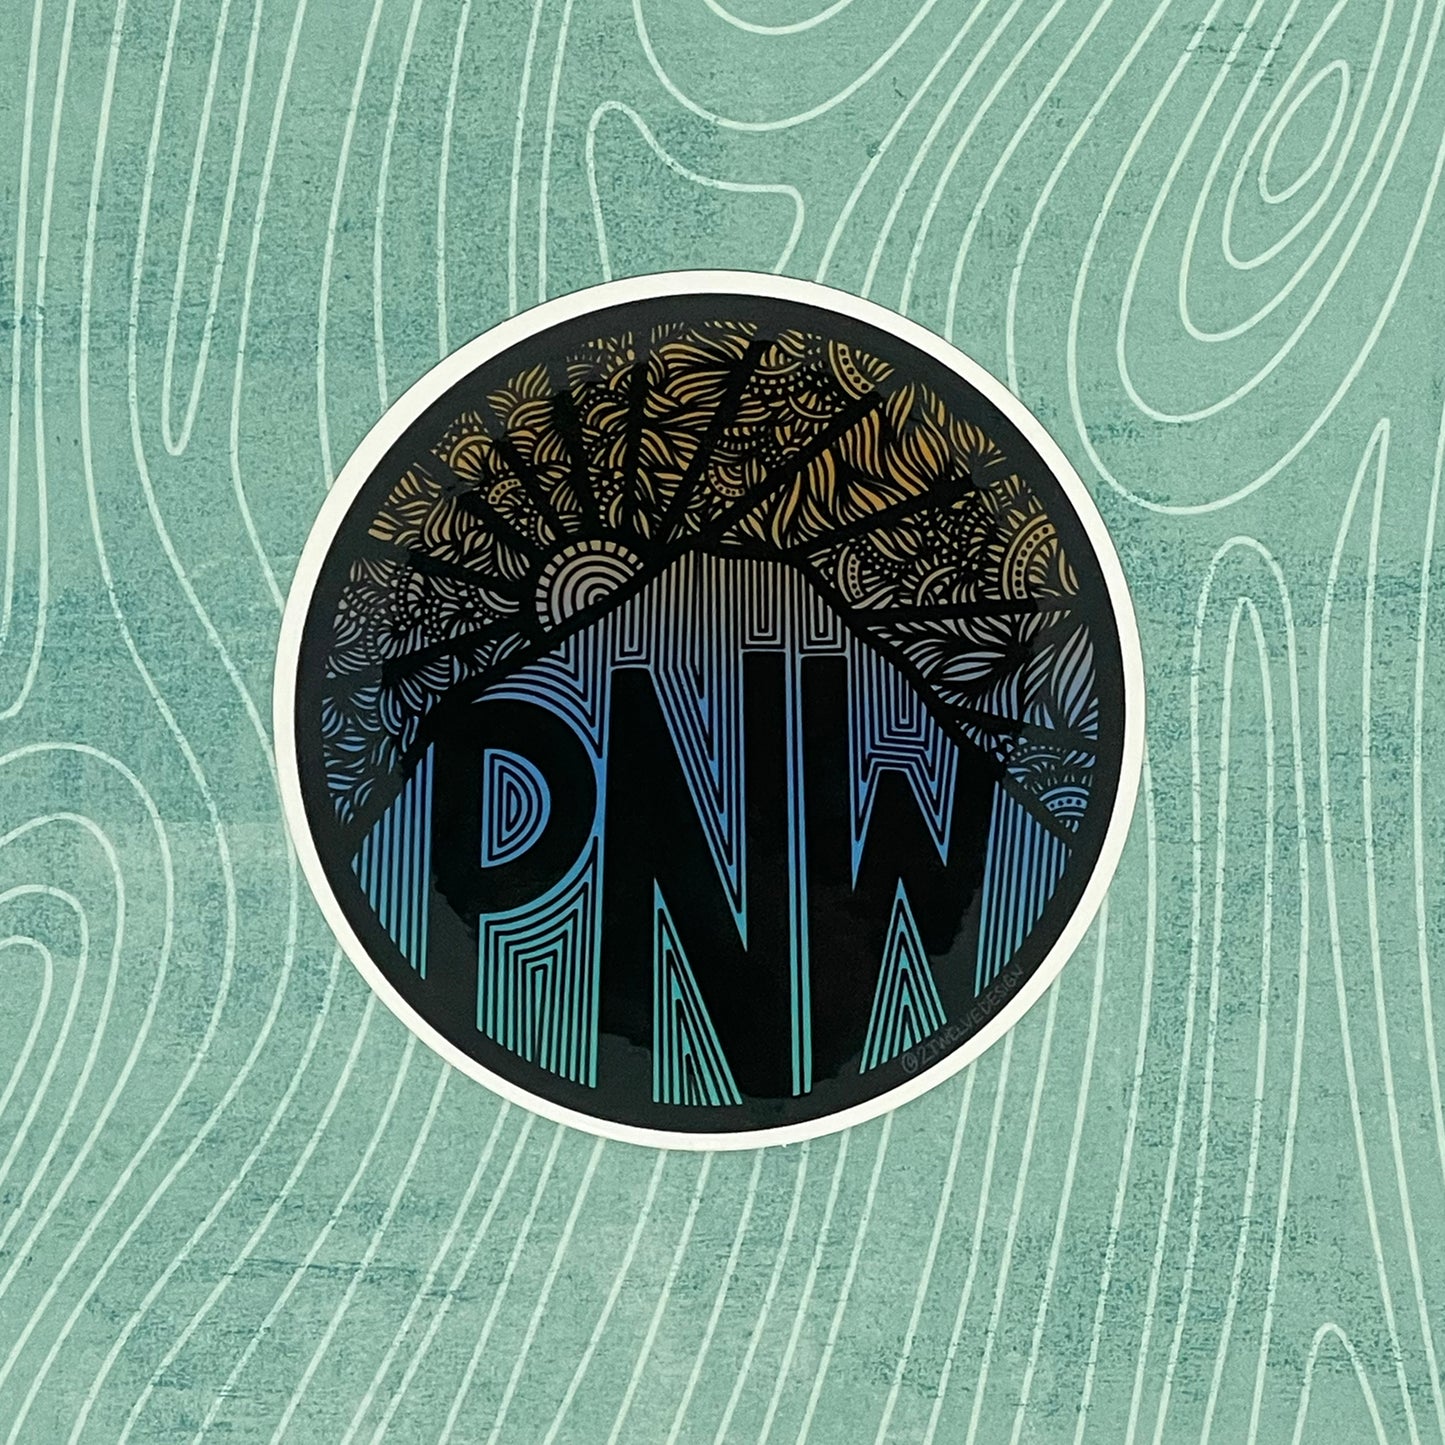 Pacific Northwest Mountain Sticker